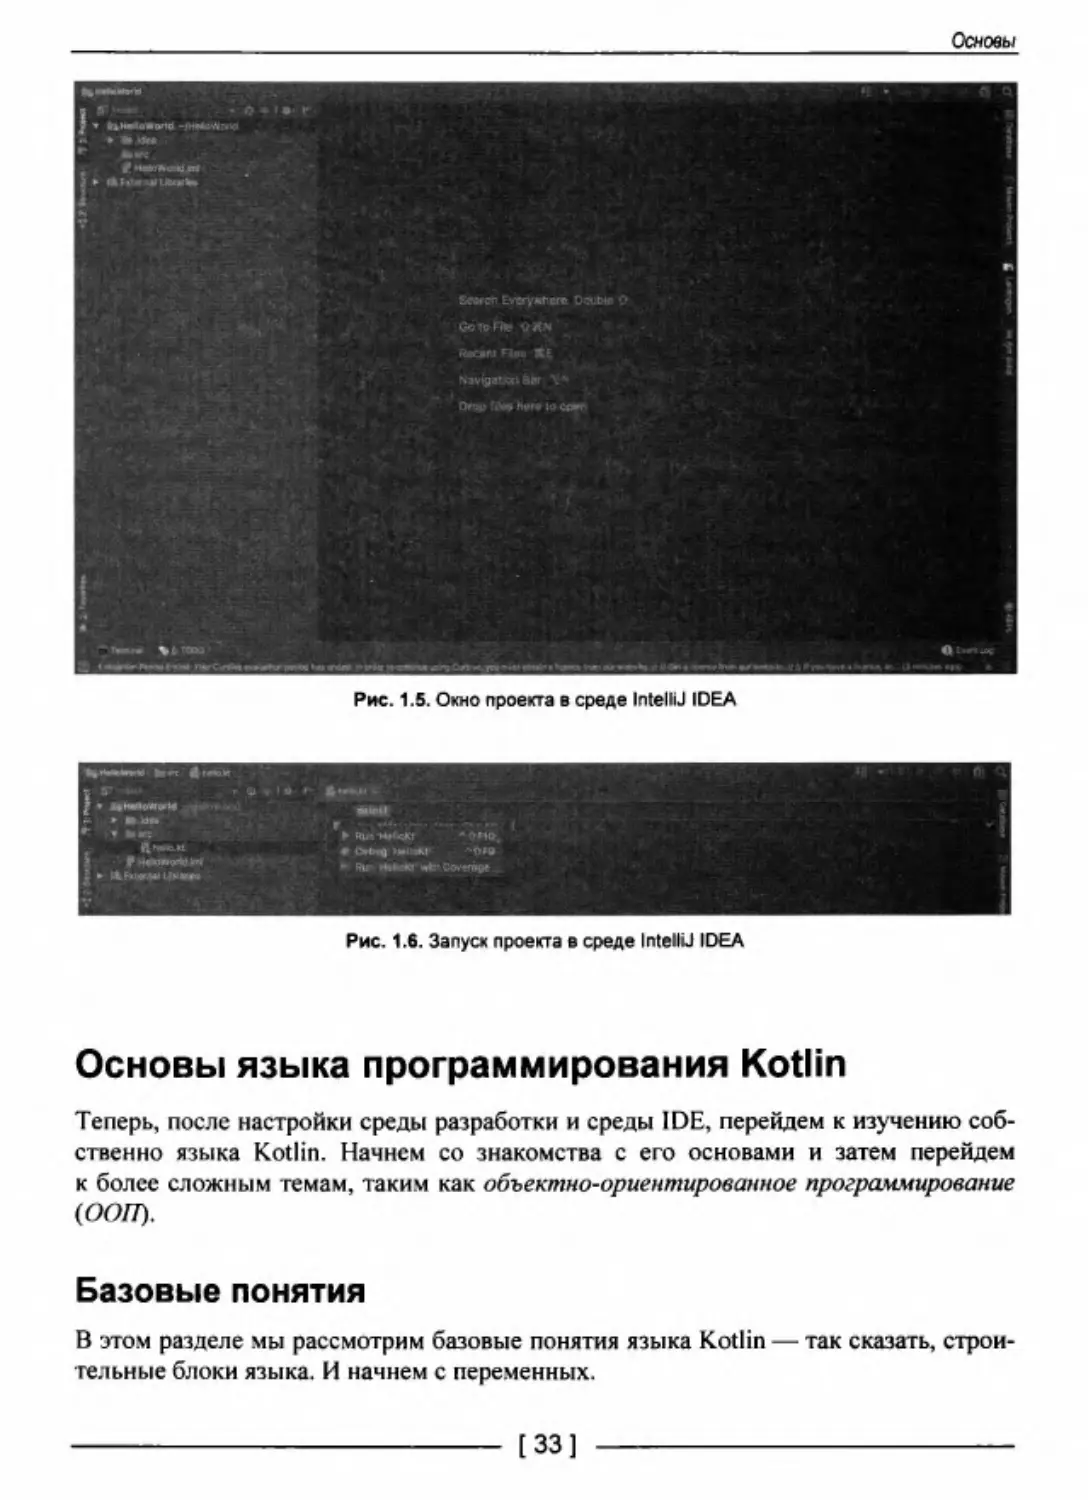 Основы языка программирования Kotlin